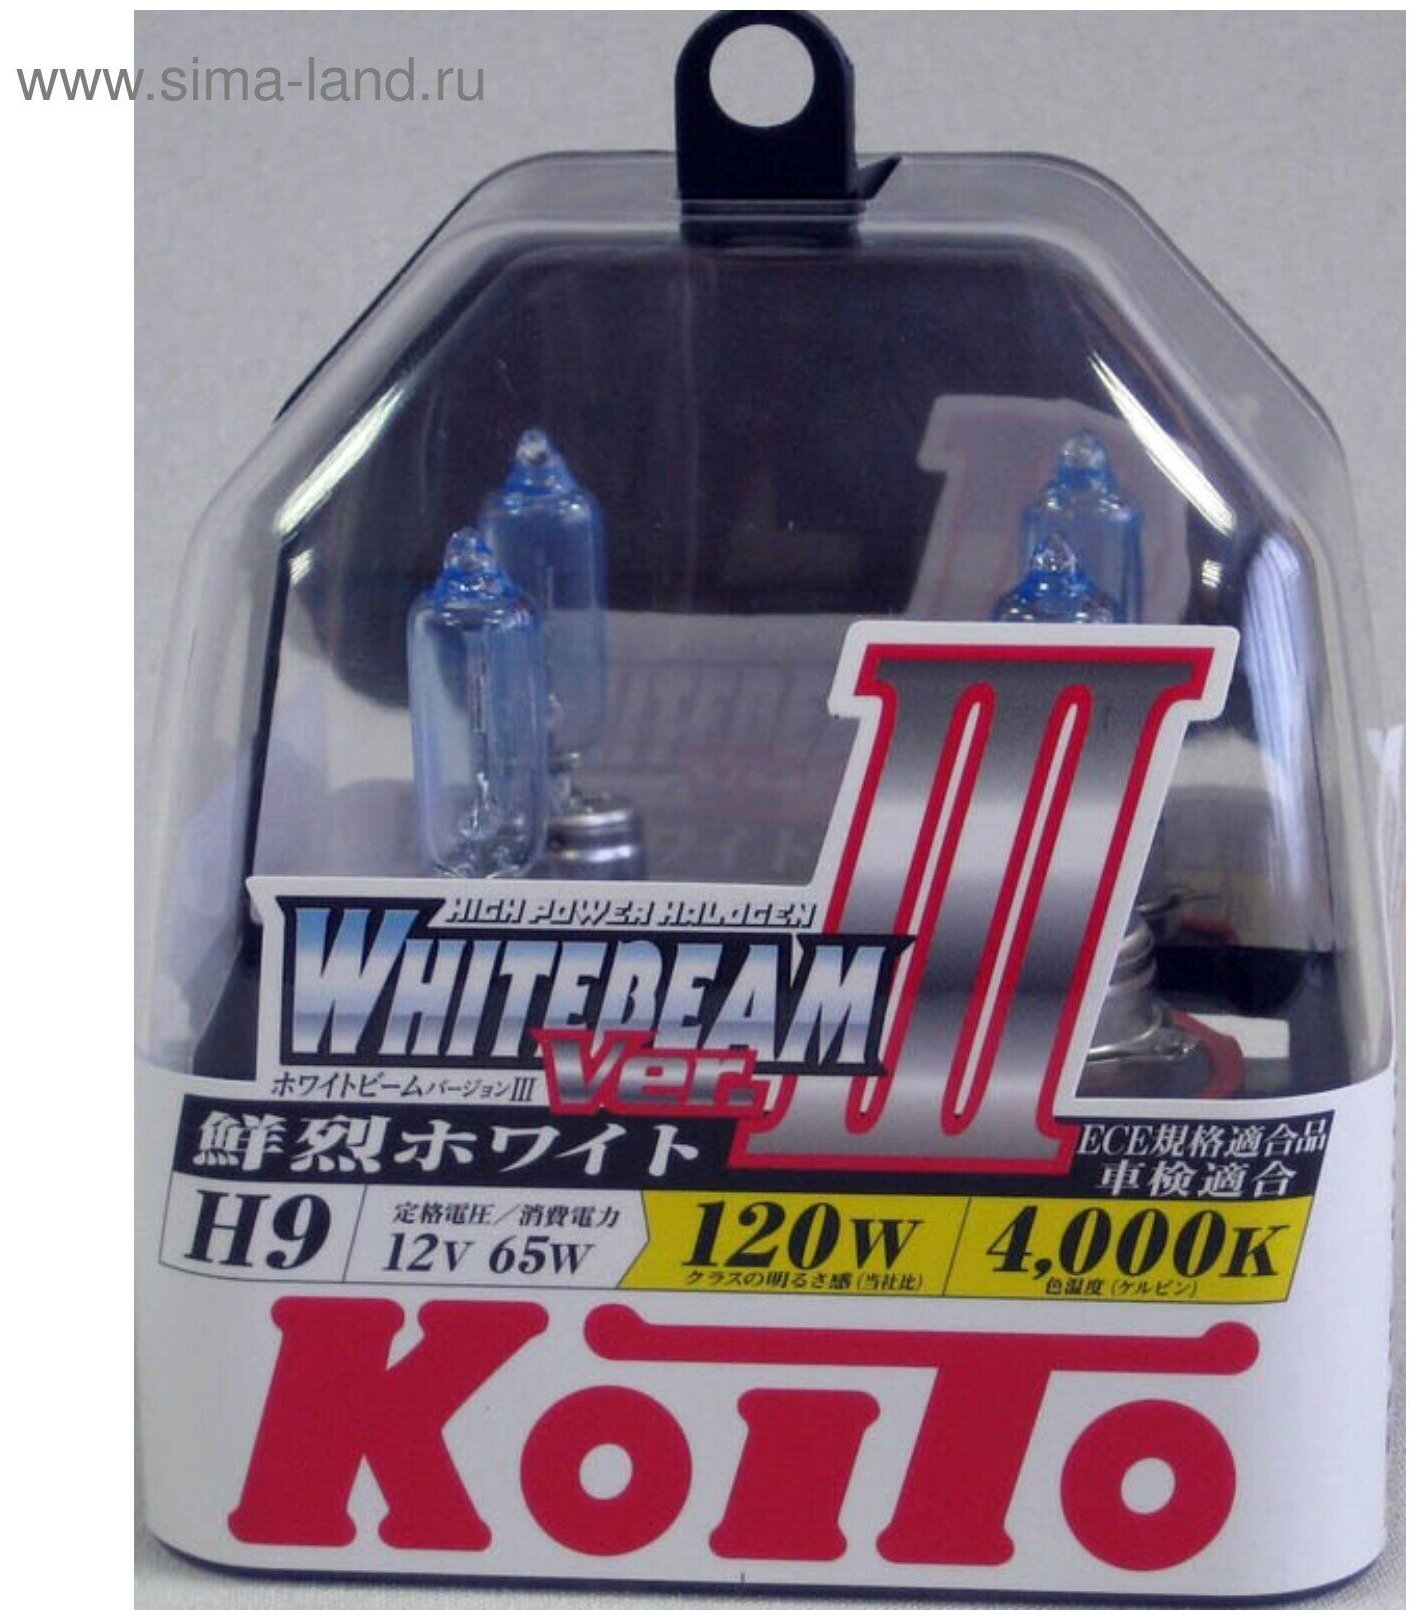 Лампа высокотемпературная Koito Whitebeam H9 12V 65W (120W) 4000K (комплект 2 шт.) арт. P0759W